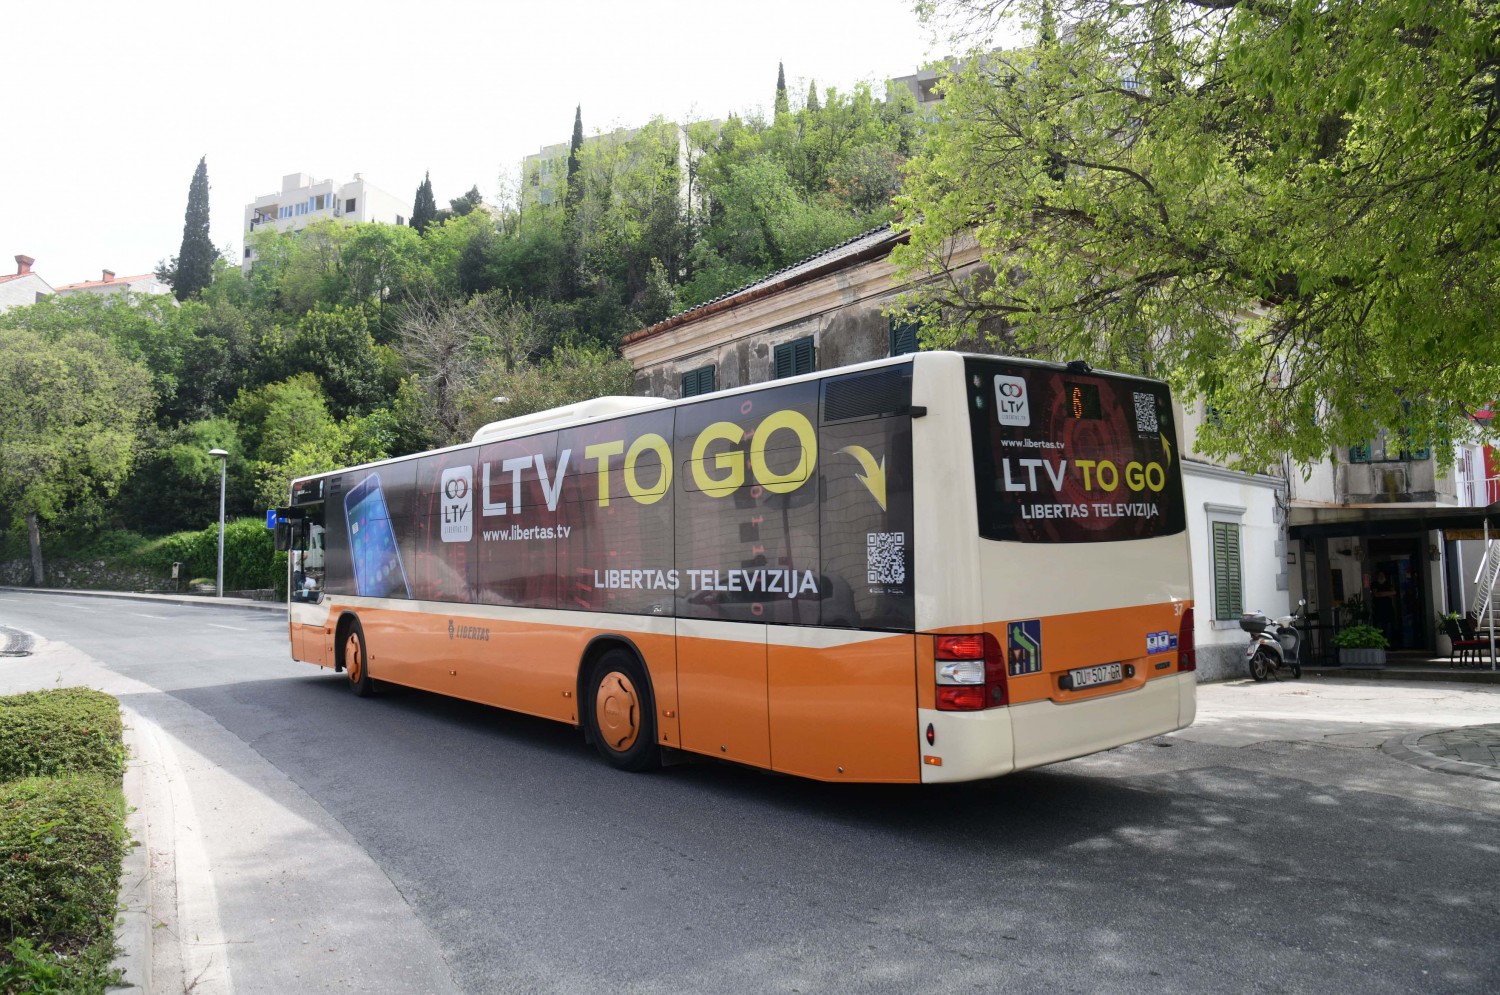 Besplatan prijevoz autobusima povodom Feste sv. Vlaha